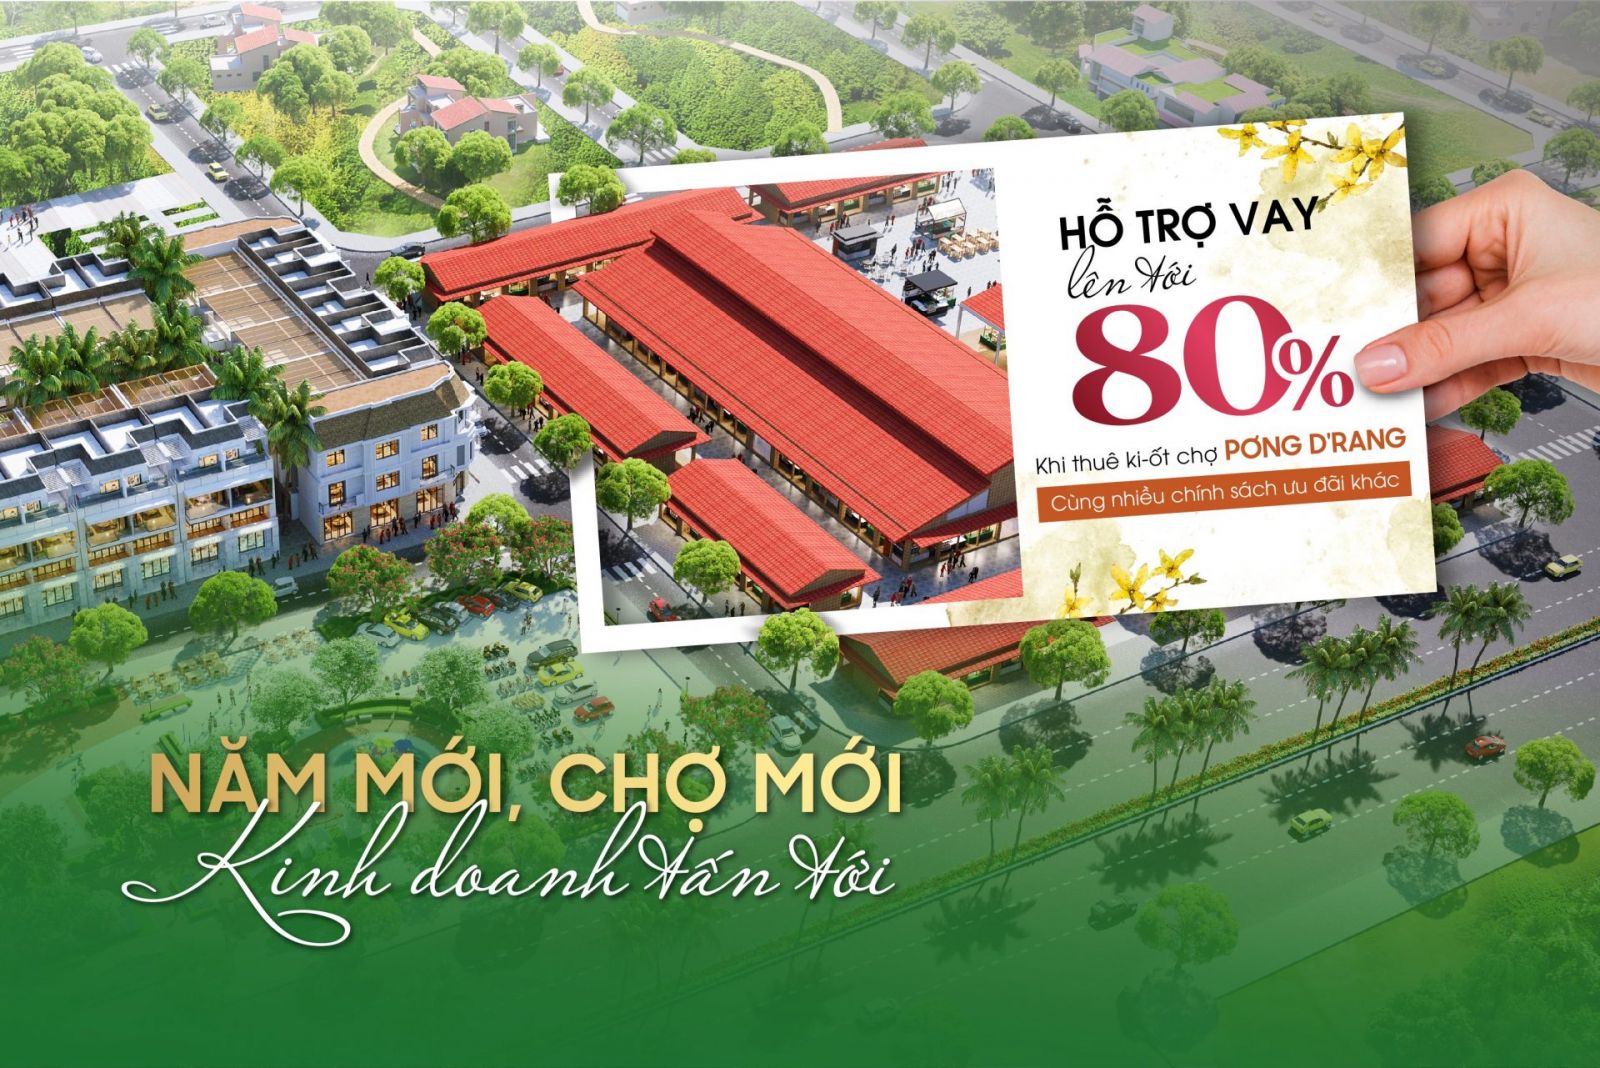 VNSC TUNG CHÍNH SÁCH ƯU ĐÃI CUỐI NĂM CHO DỰ ÁN CHỢ PƠNG D’RANG - Viet Nam Smart City